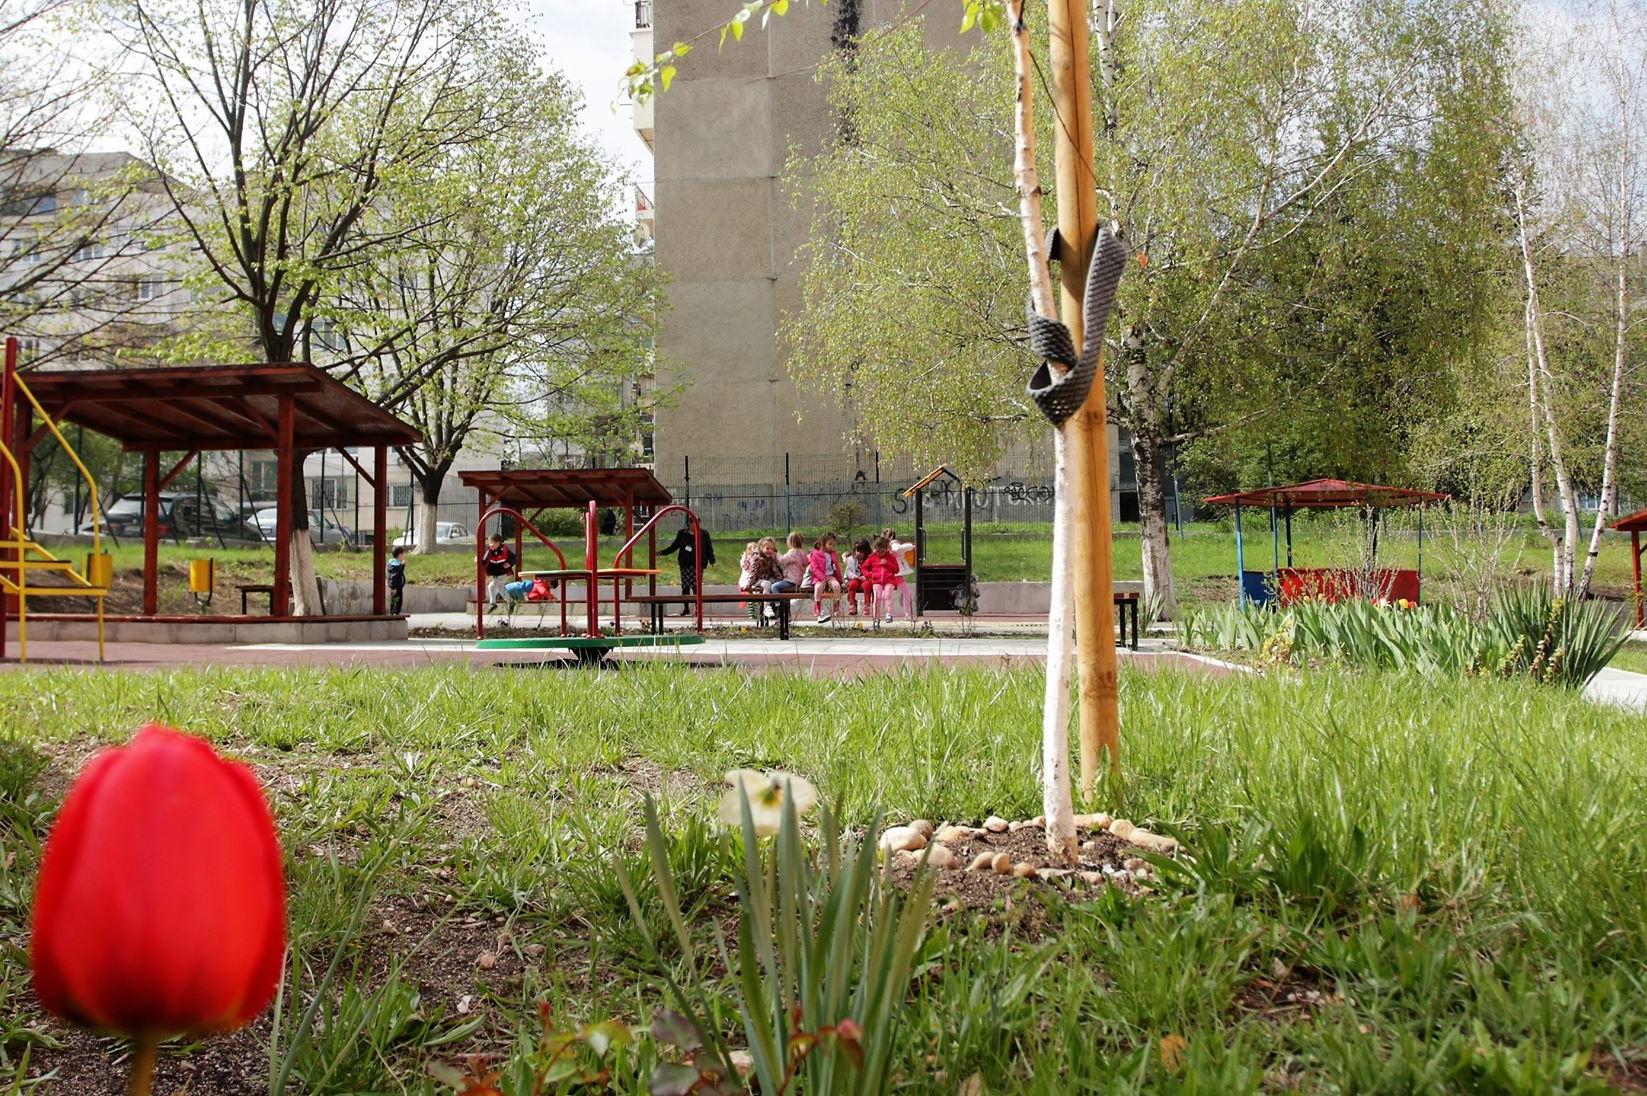 35-а детска градина "Щастливо детство" в Люлин